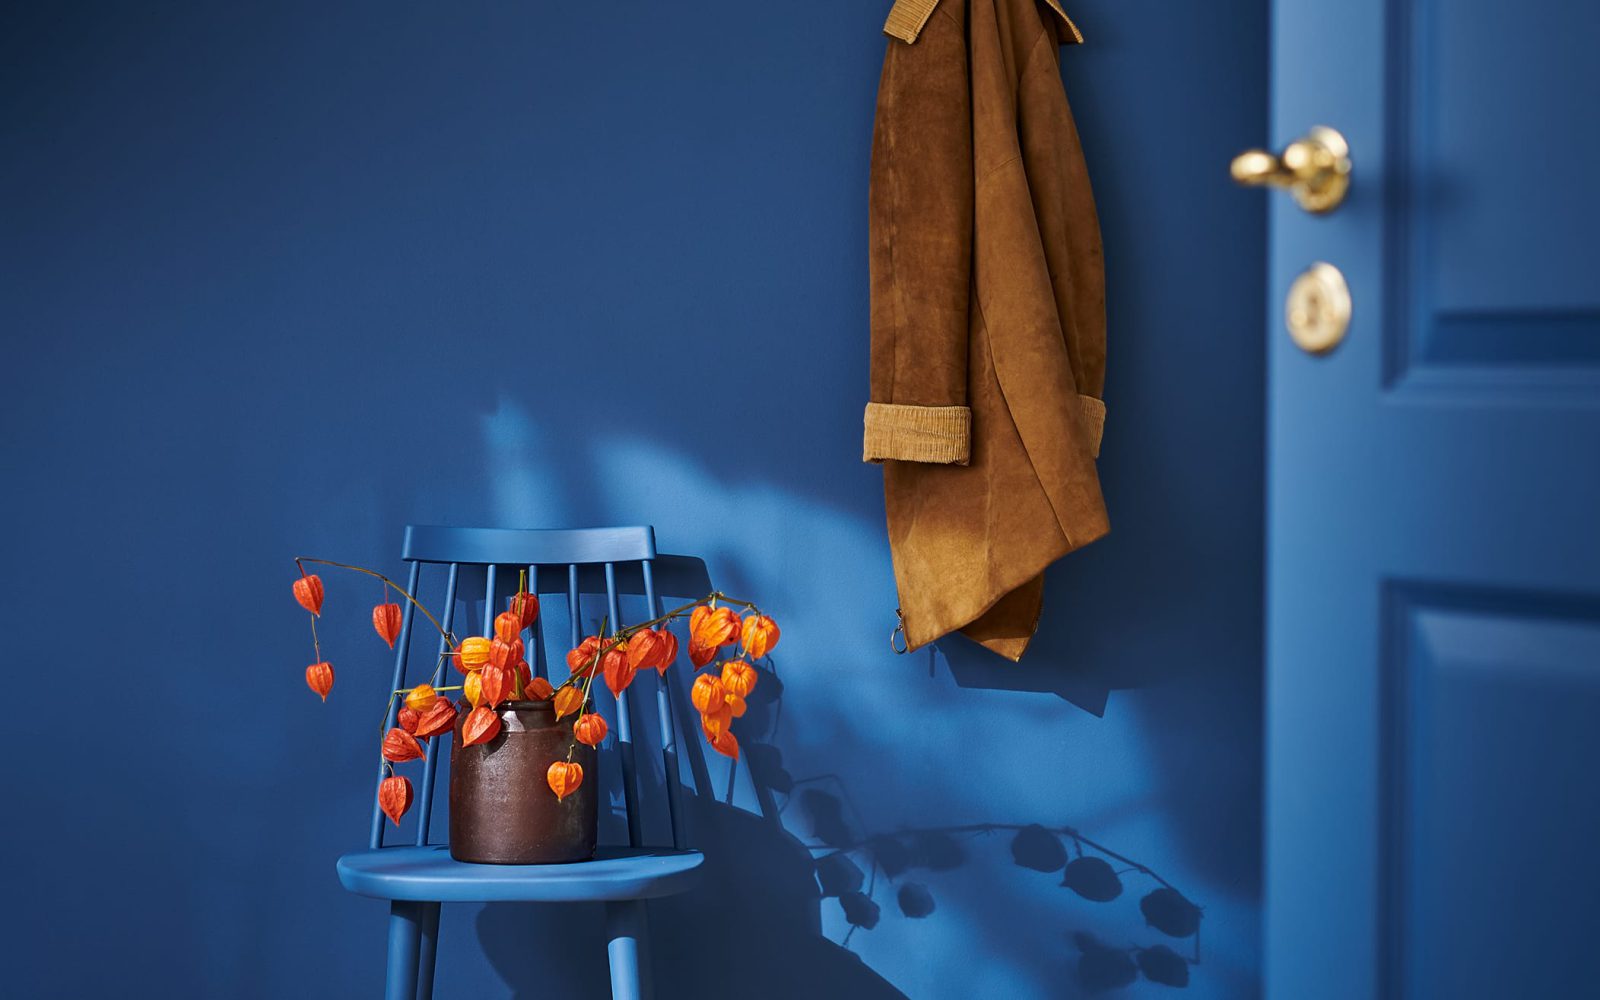 Rummet, dörren och stolen är helt målat i blått och på stolen står en orange växt